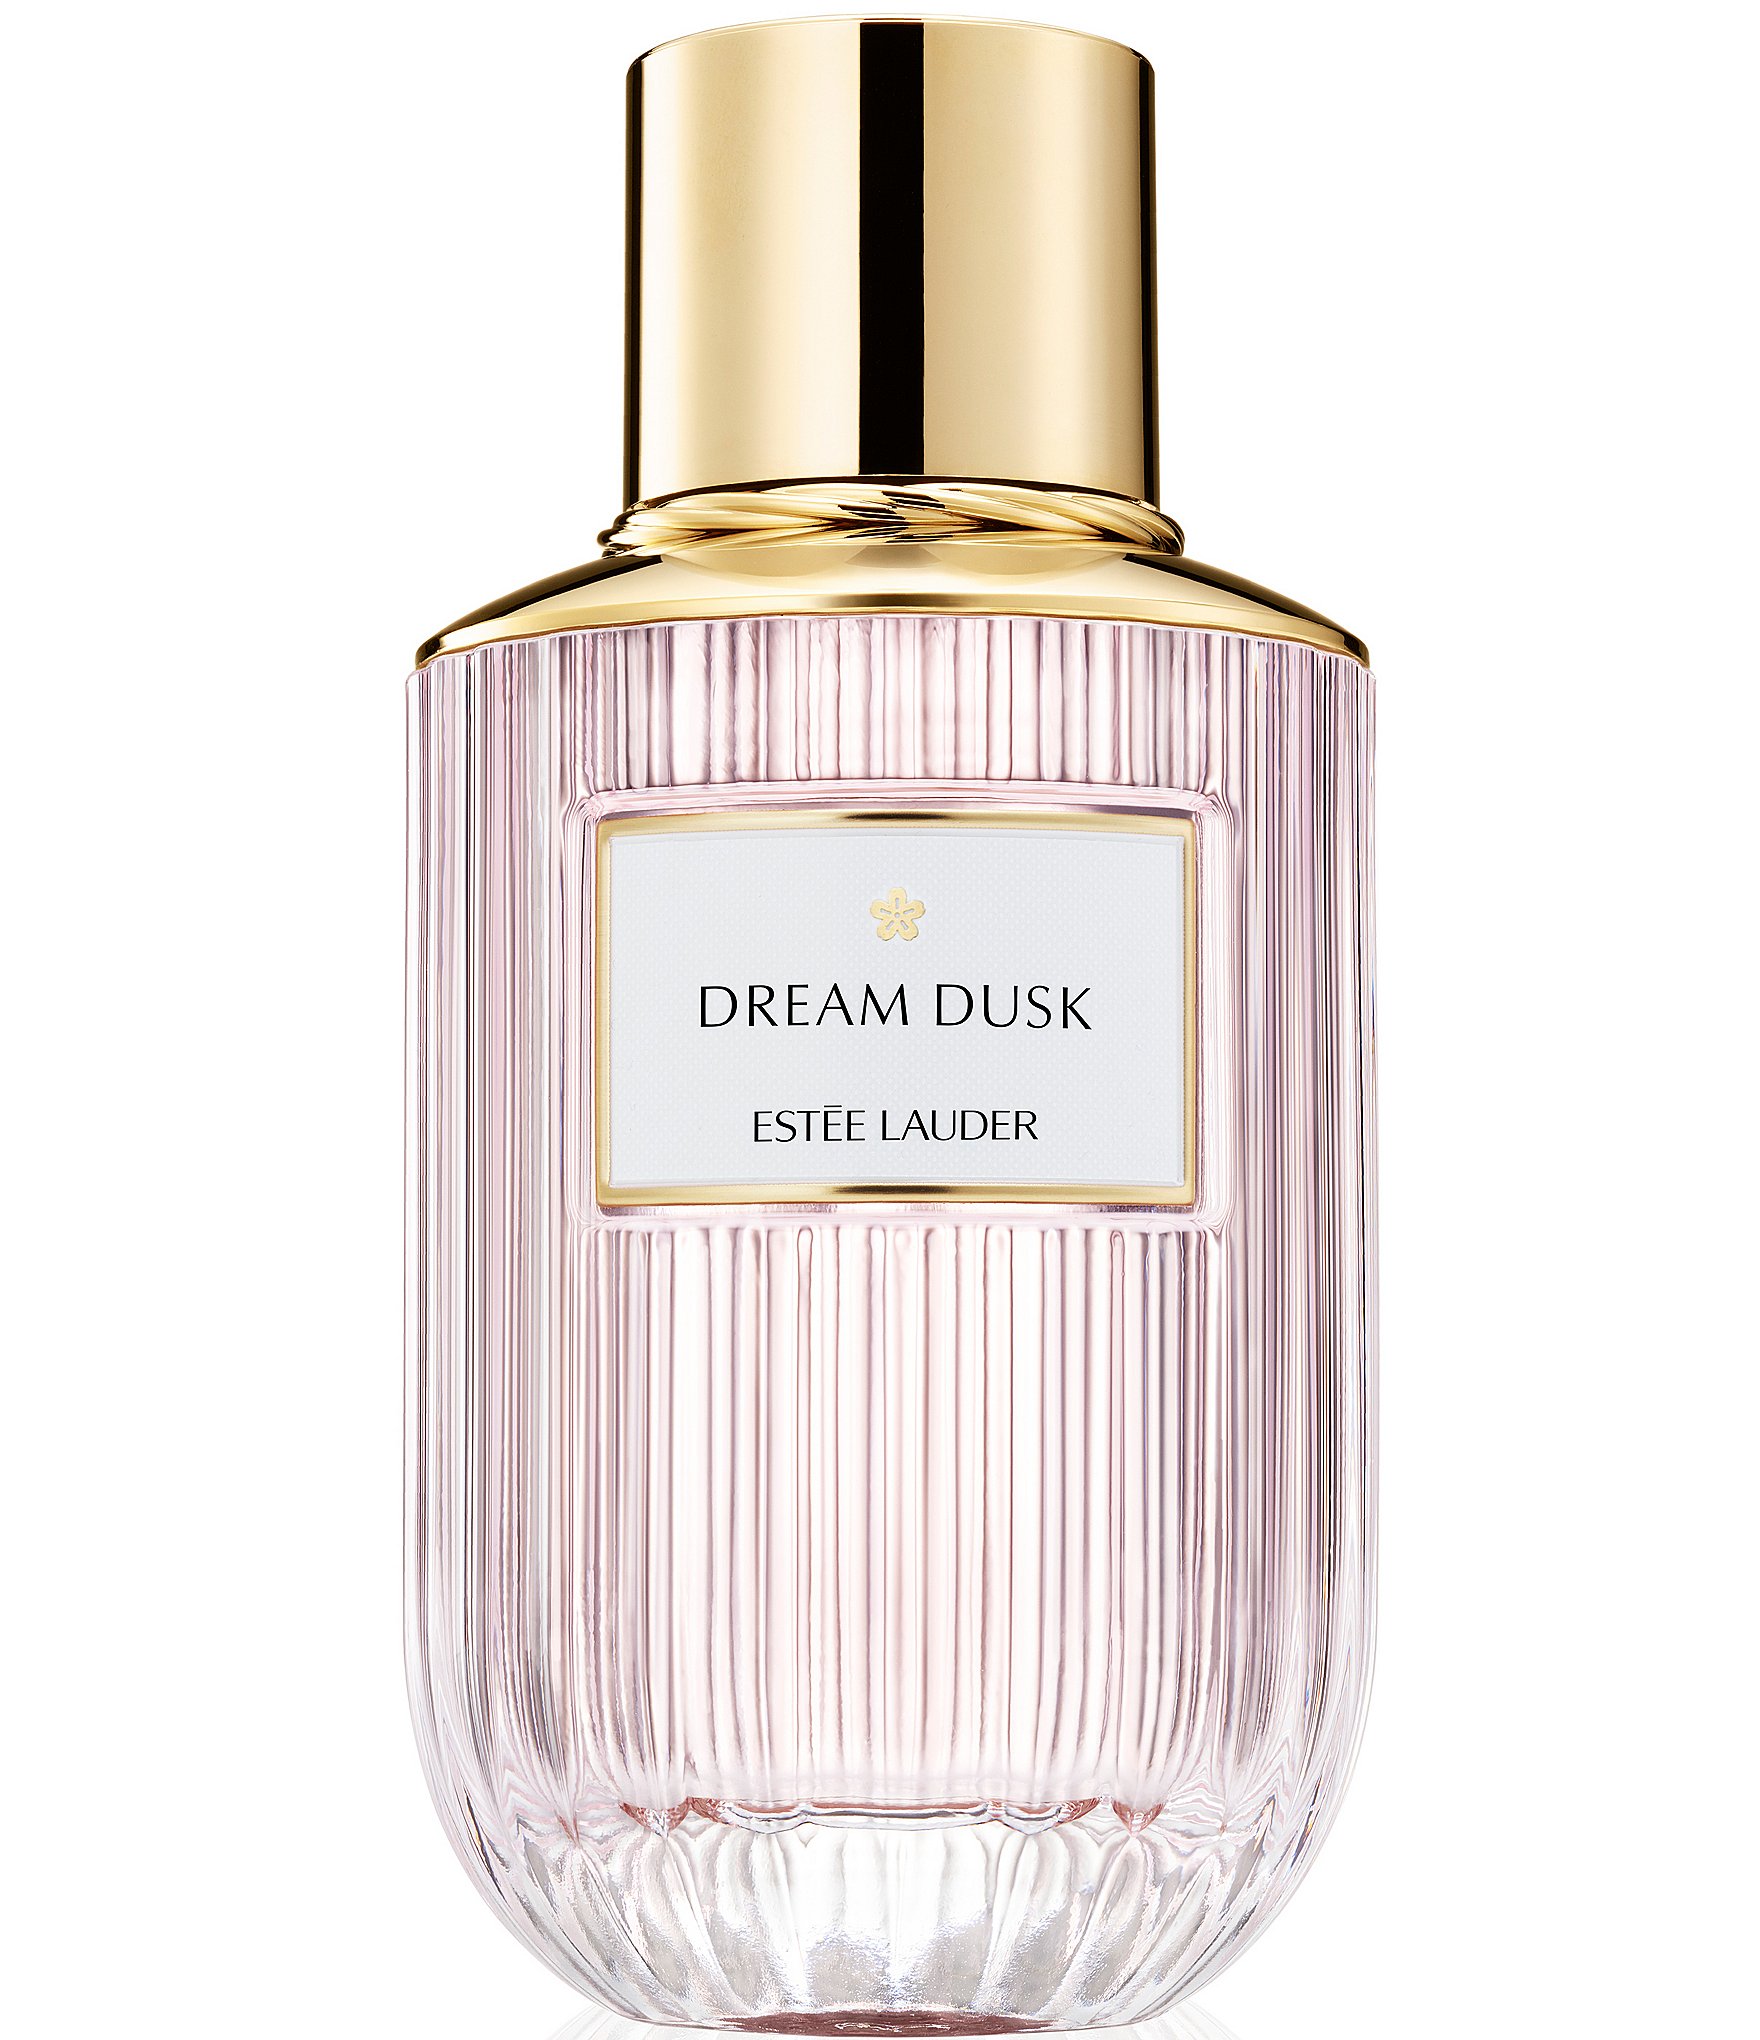 Estee Lauder Dream Dusk Eau de Parfum 3.4 oz